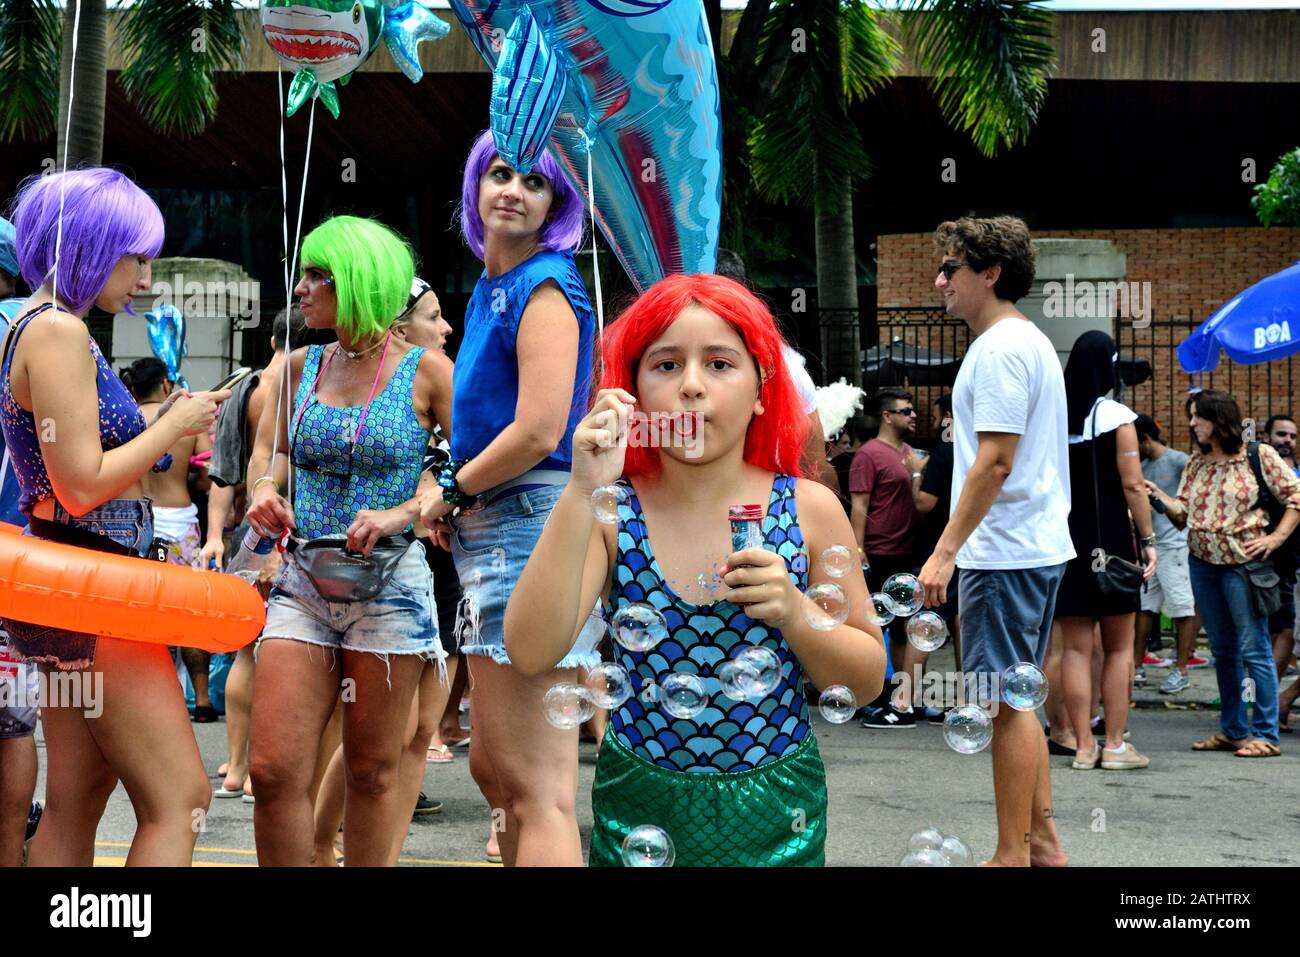 Street Carnival, Südamerika, Brasilien - 17. Februar 2019: Ein junges Mädchen macht während einer Carnival Street Party in Rio de Janeiro Seifenblasen. Stockfoto